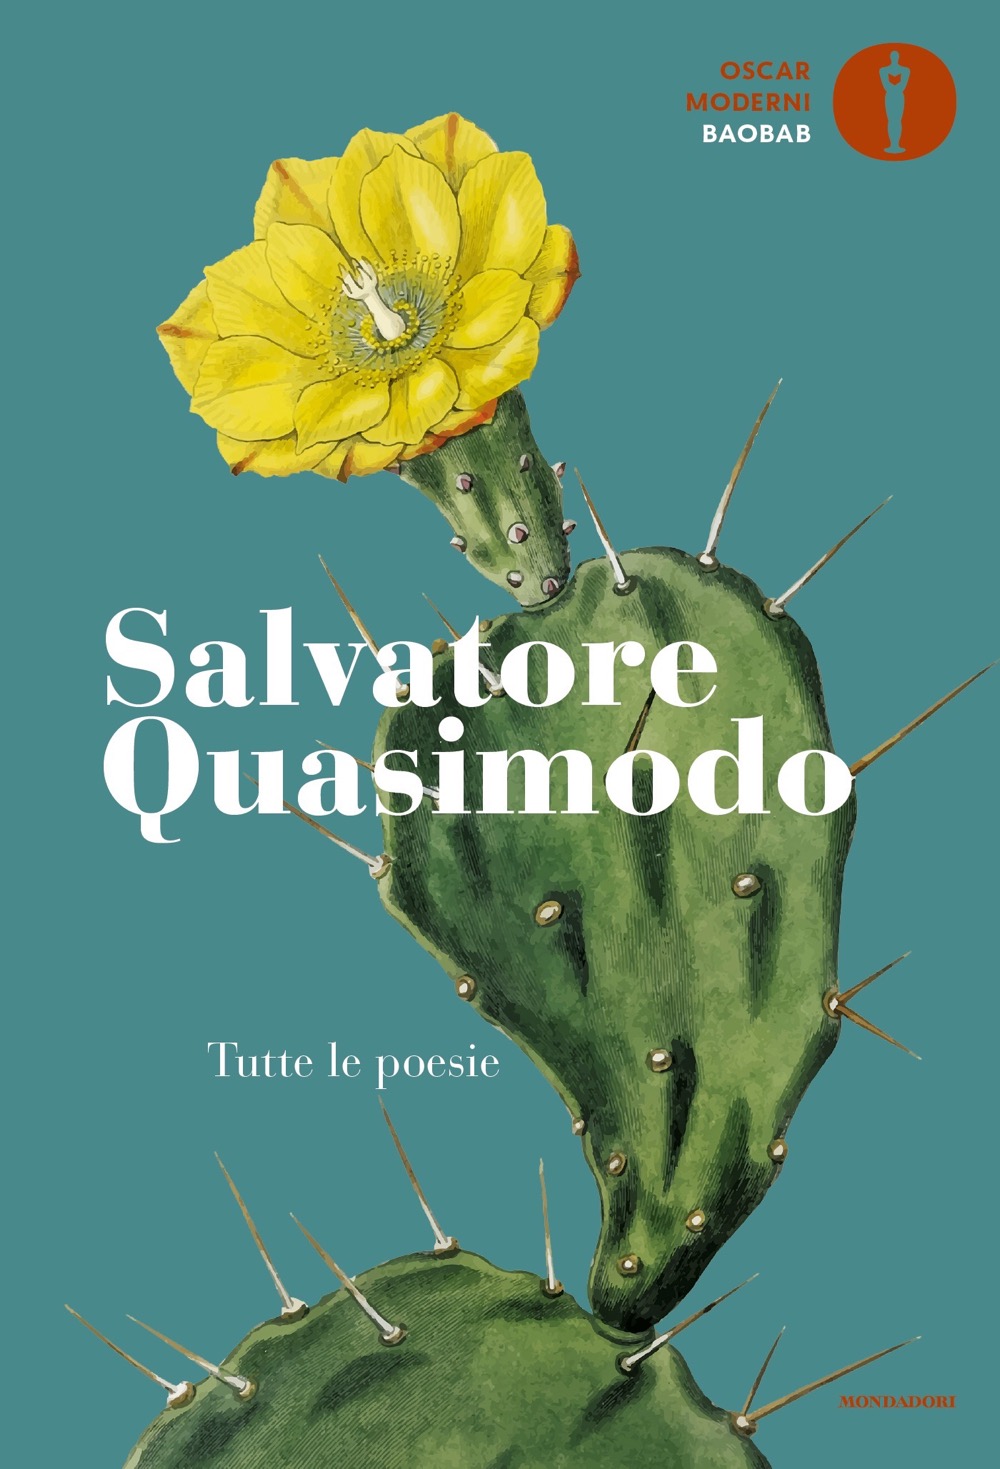 Salvatore Quasimodo, Tutte le poesie